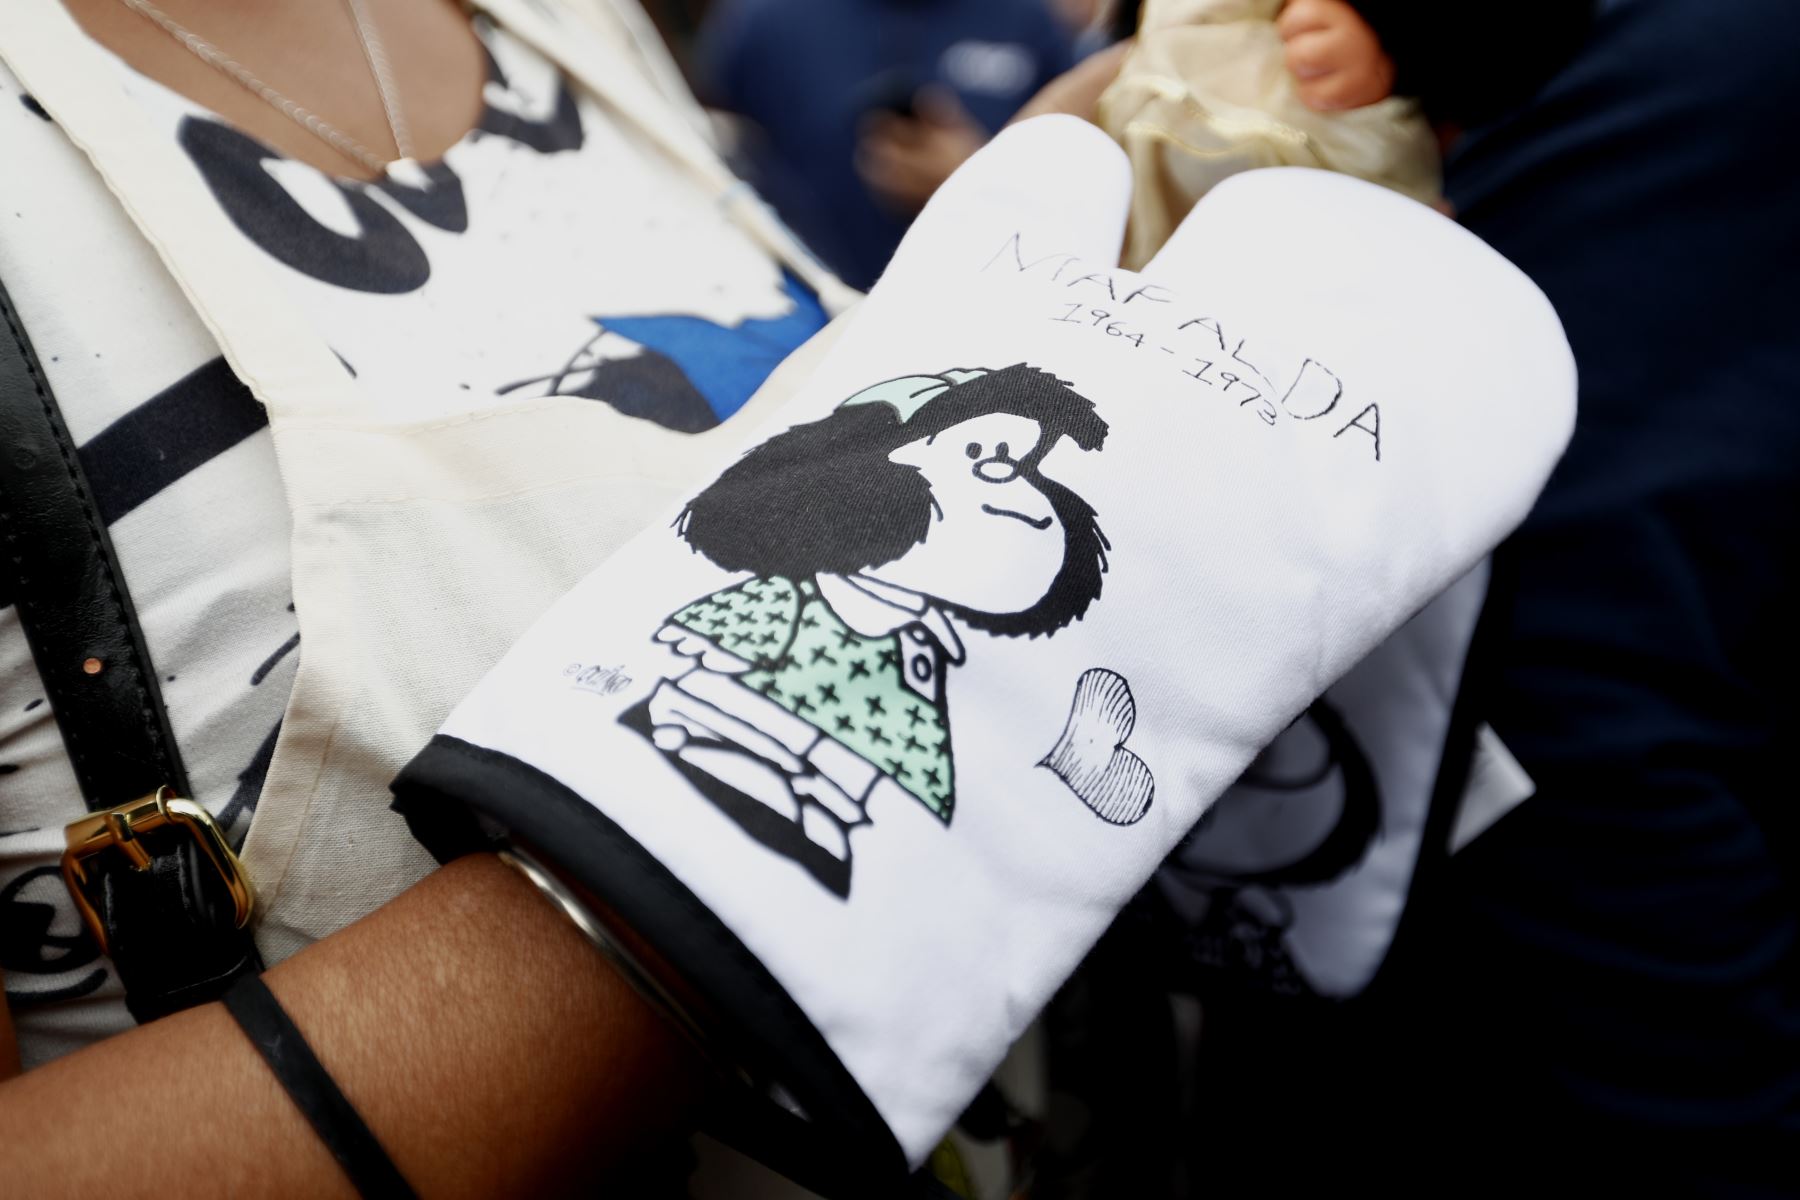 La instalación de la estatua de Mafalda en el Boulevard Sáenz Peña, en el distrito de Barranco atrajo a muchos de sus fanáticos y fanáticas, los cuales llegaron con prendas y objetos alusivos al popular personaje de tiras cómicas argentina. Foto: ANDINA/Daniel Bracamonte